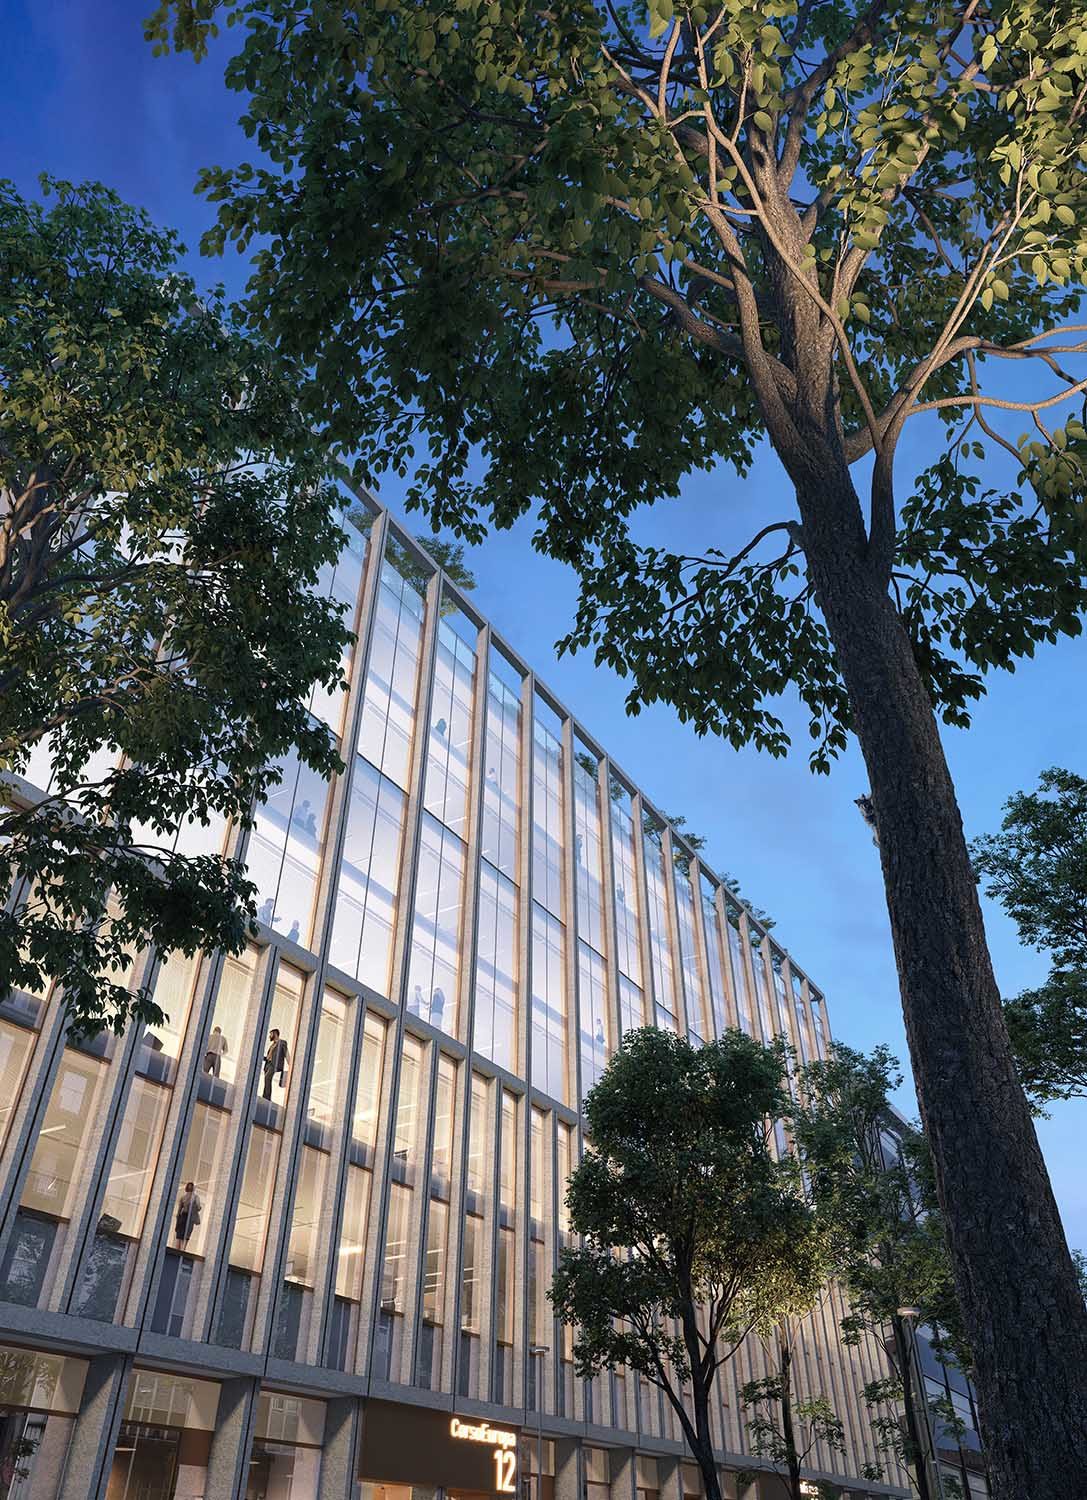 New headquarters in Milan, Italy – Genius loci architettura, 2019